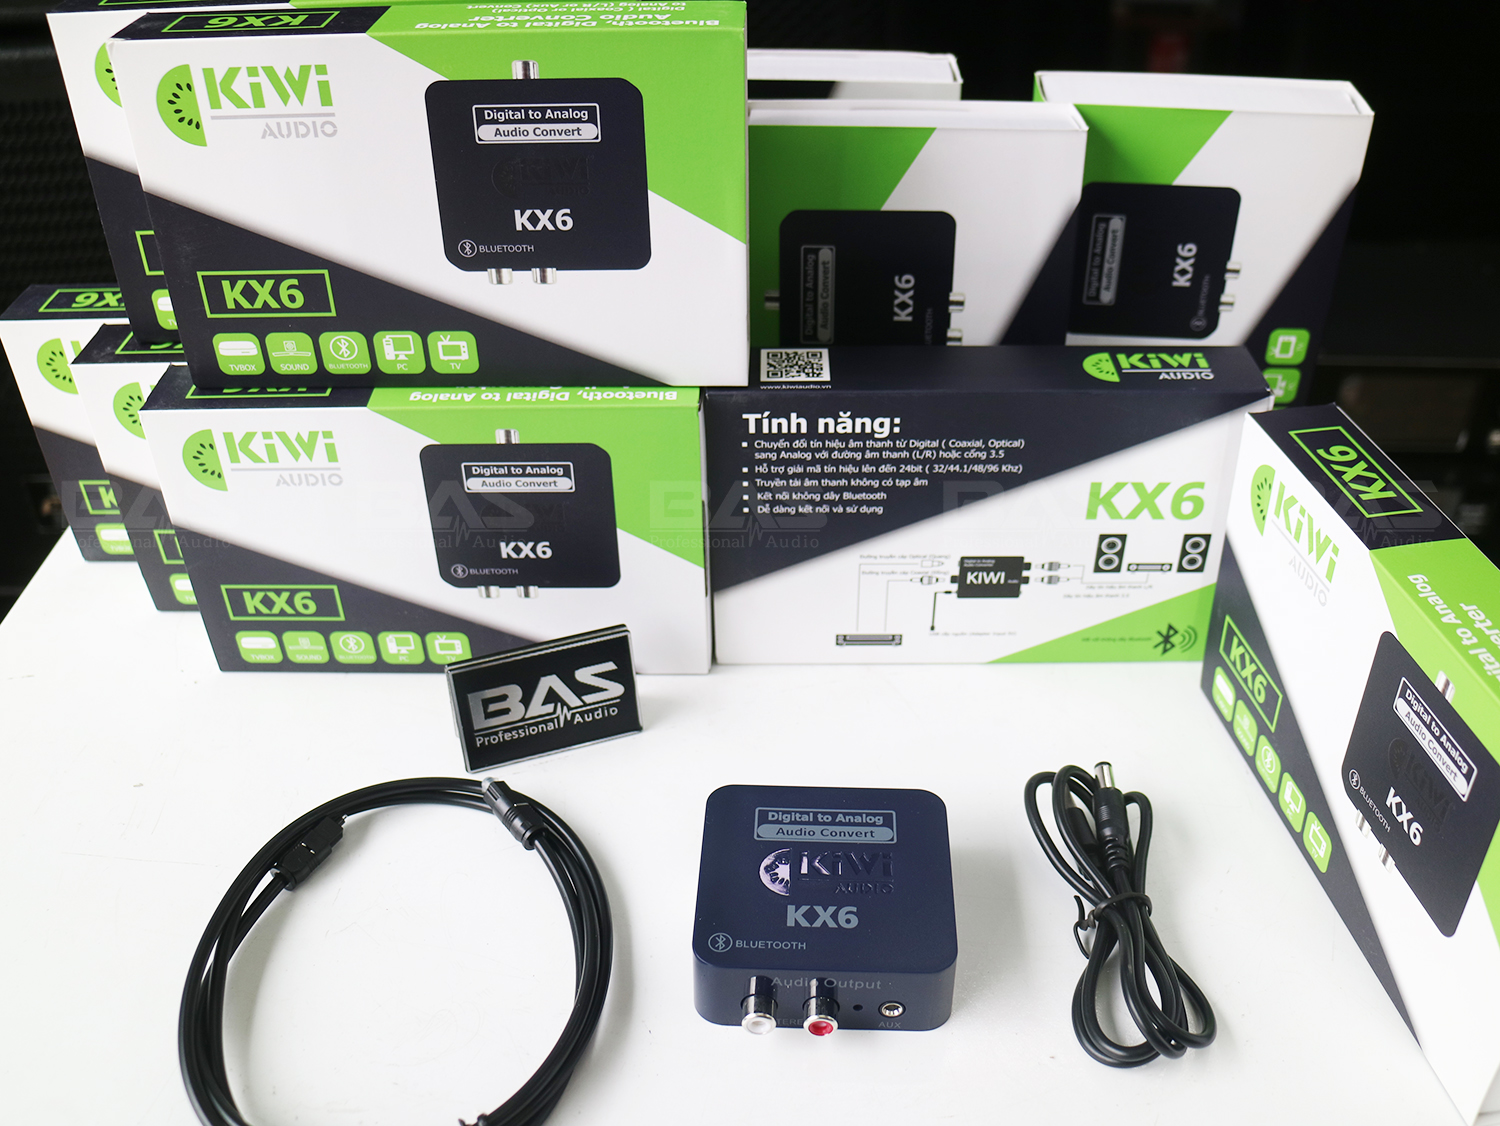 Chuyển quang Kiwi KX6, DAC kiwi, mua bộ chuyển đổi âm thanh tại Nam Định